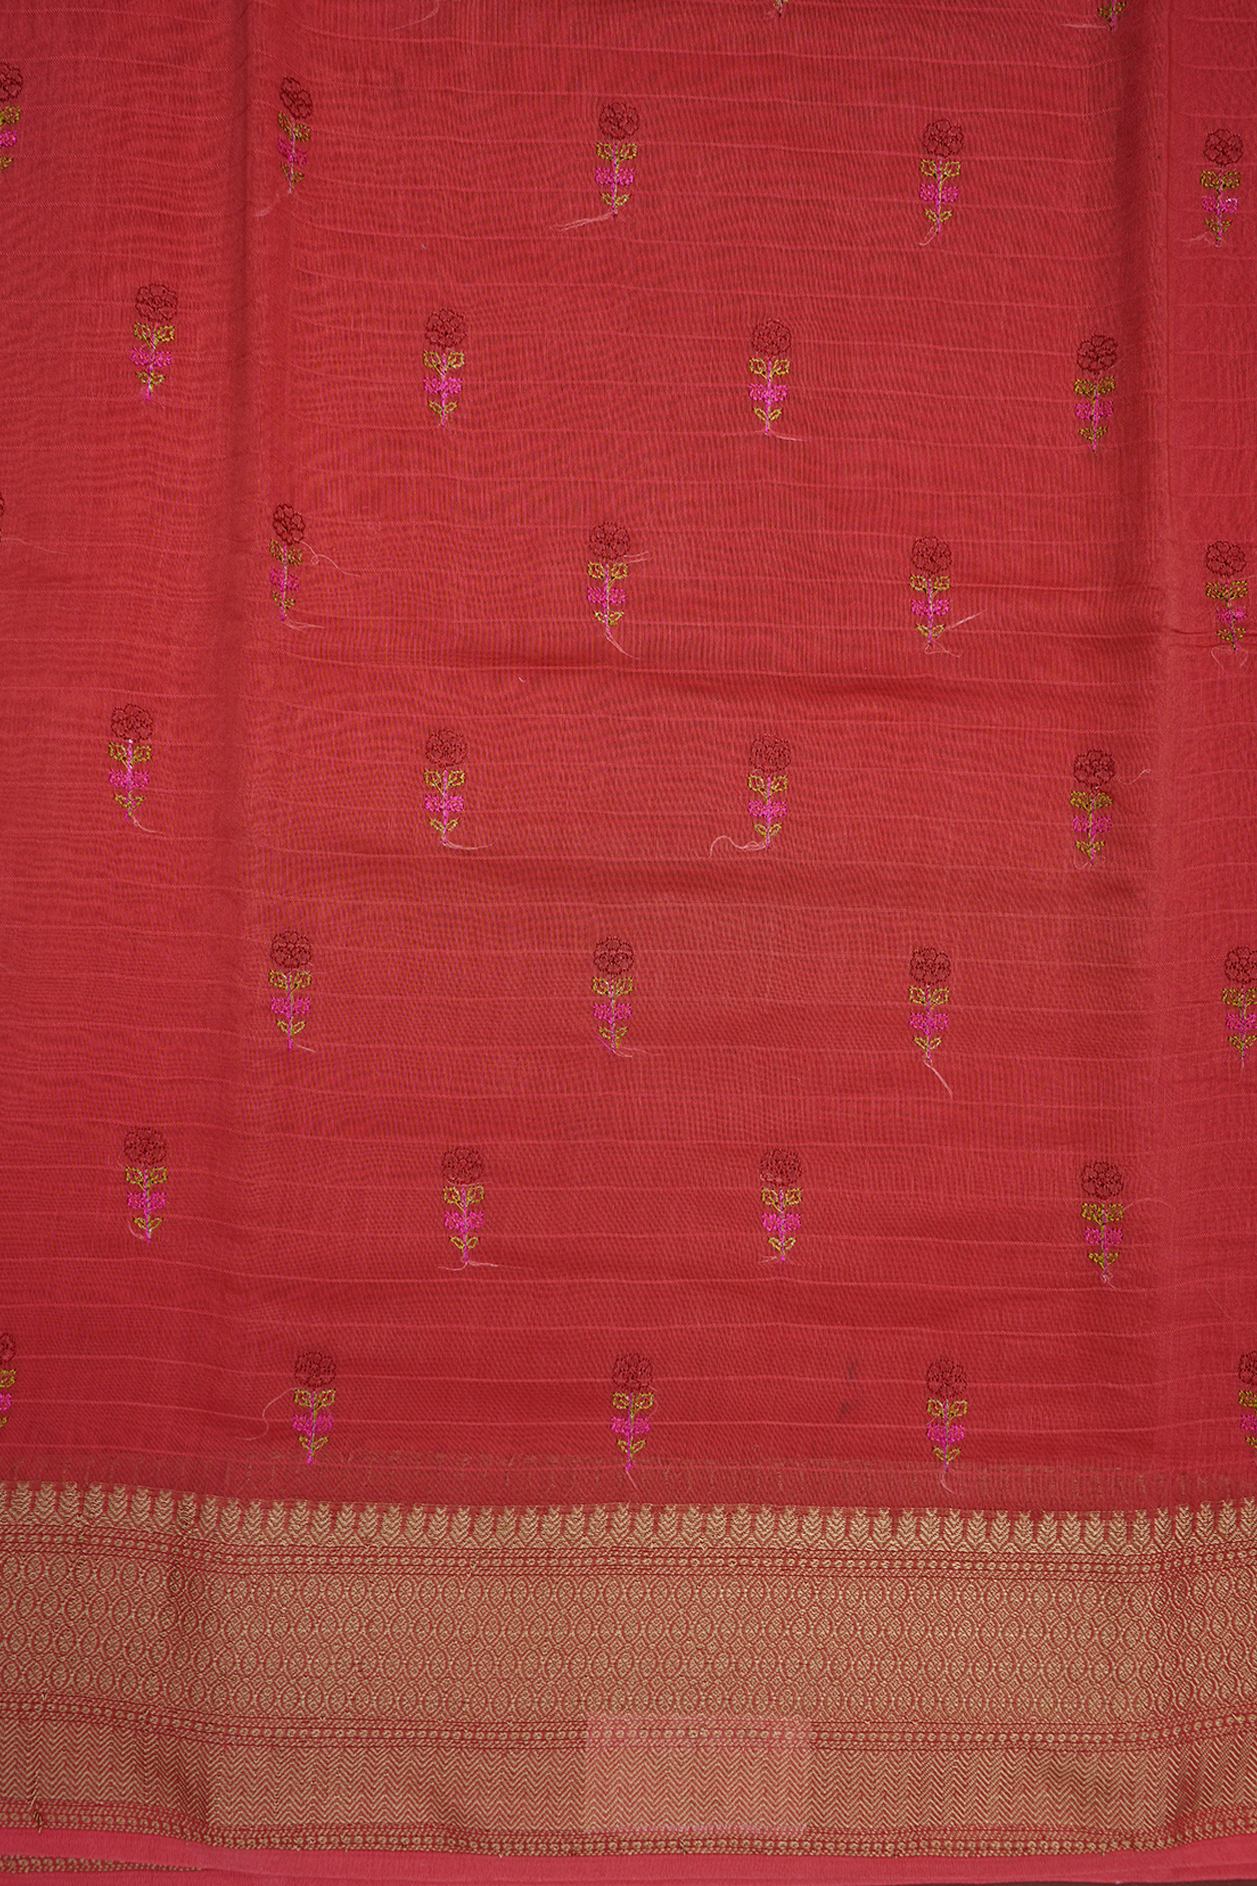 Floral Buttas Coral Red Chanderi Silk Cotton Saree